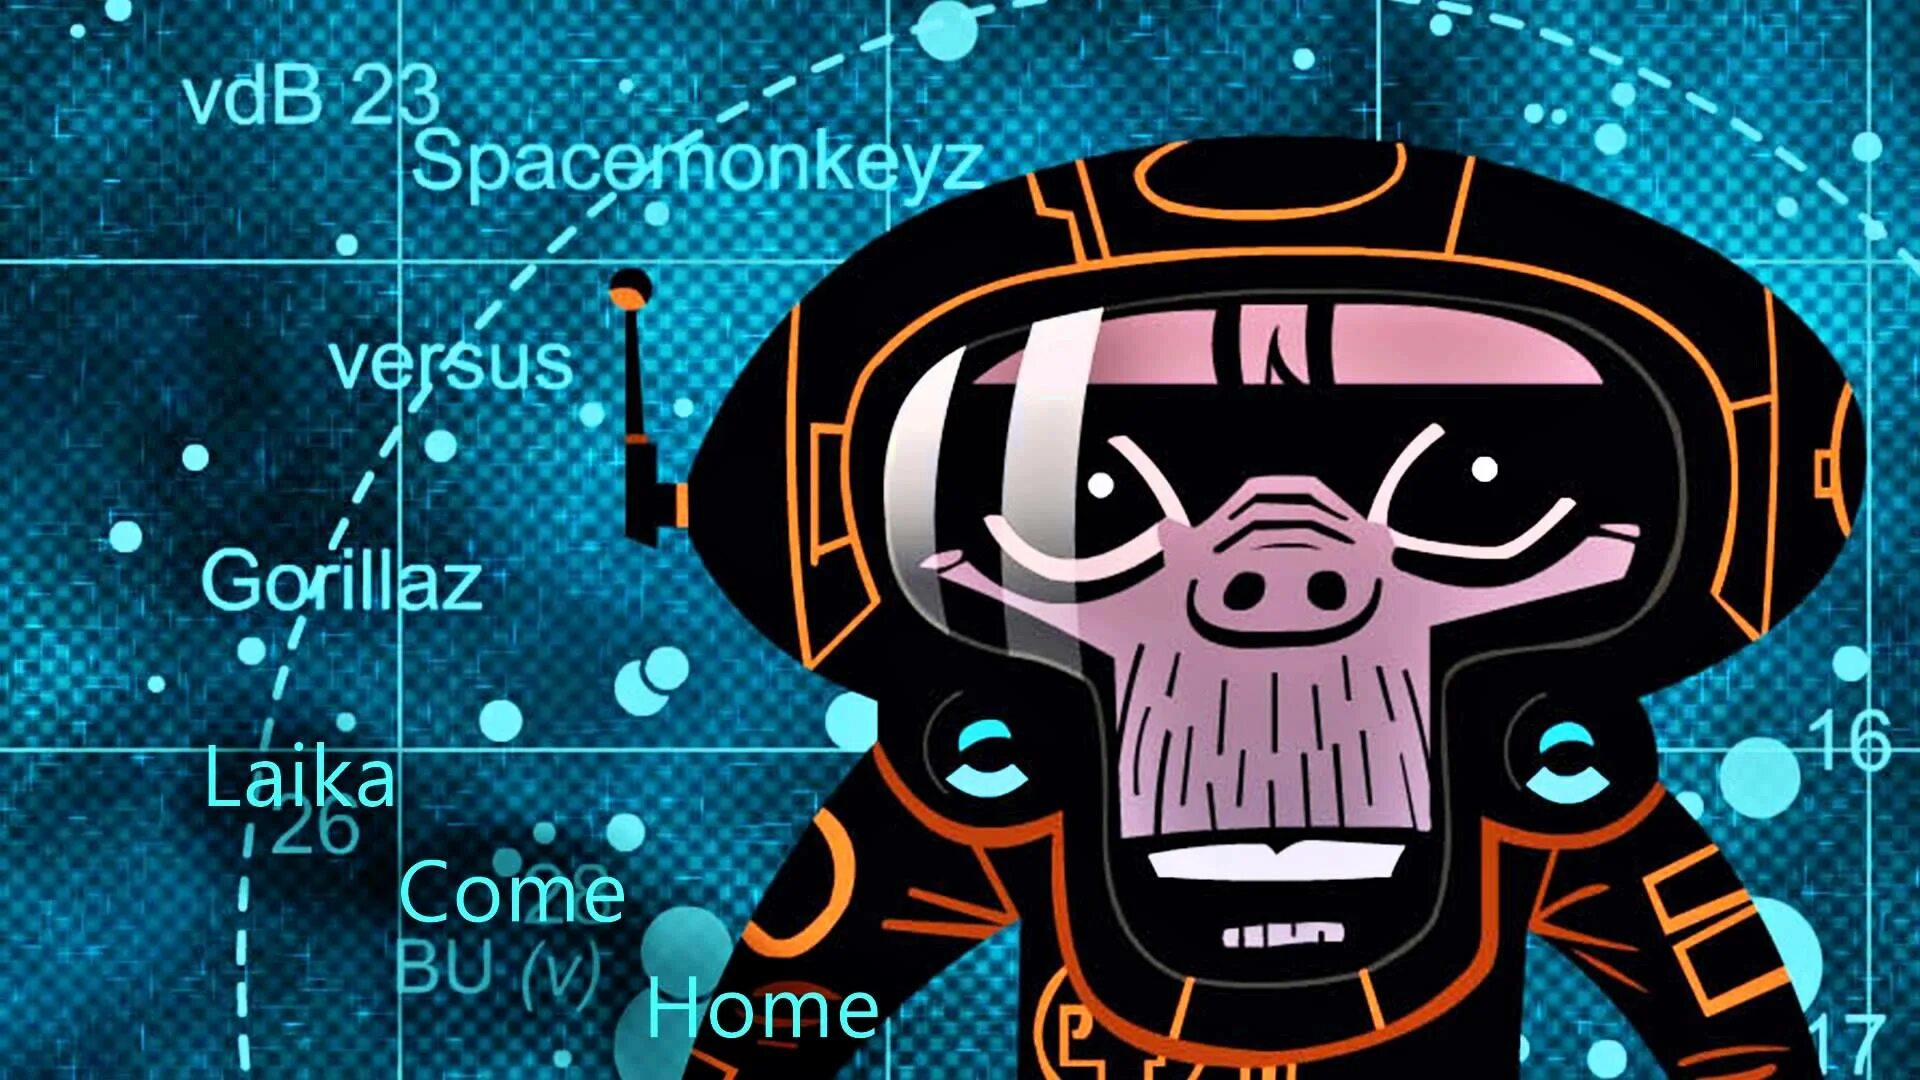 Come home game. Gorillaz laika come Home. Spacemonkeyz. Spacemonkeyz versus Gorillaz laika come Home. M1a1 Gorillaz.